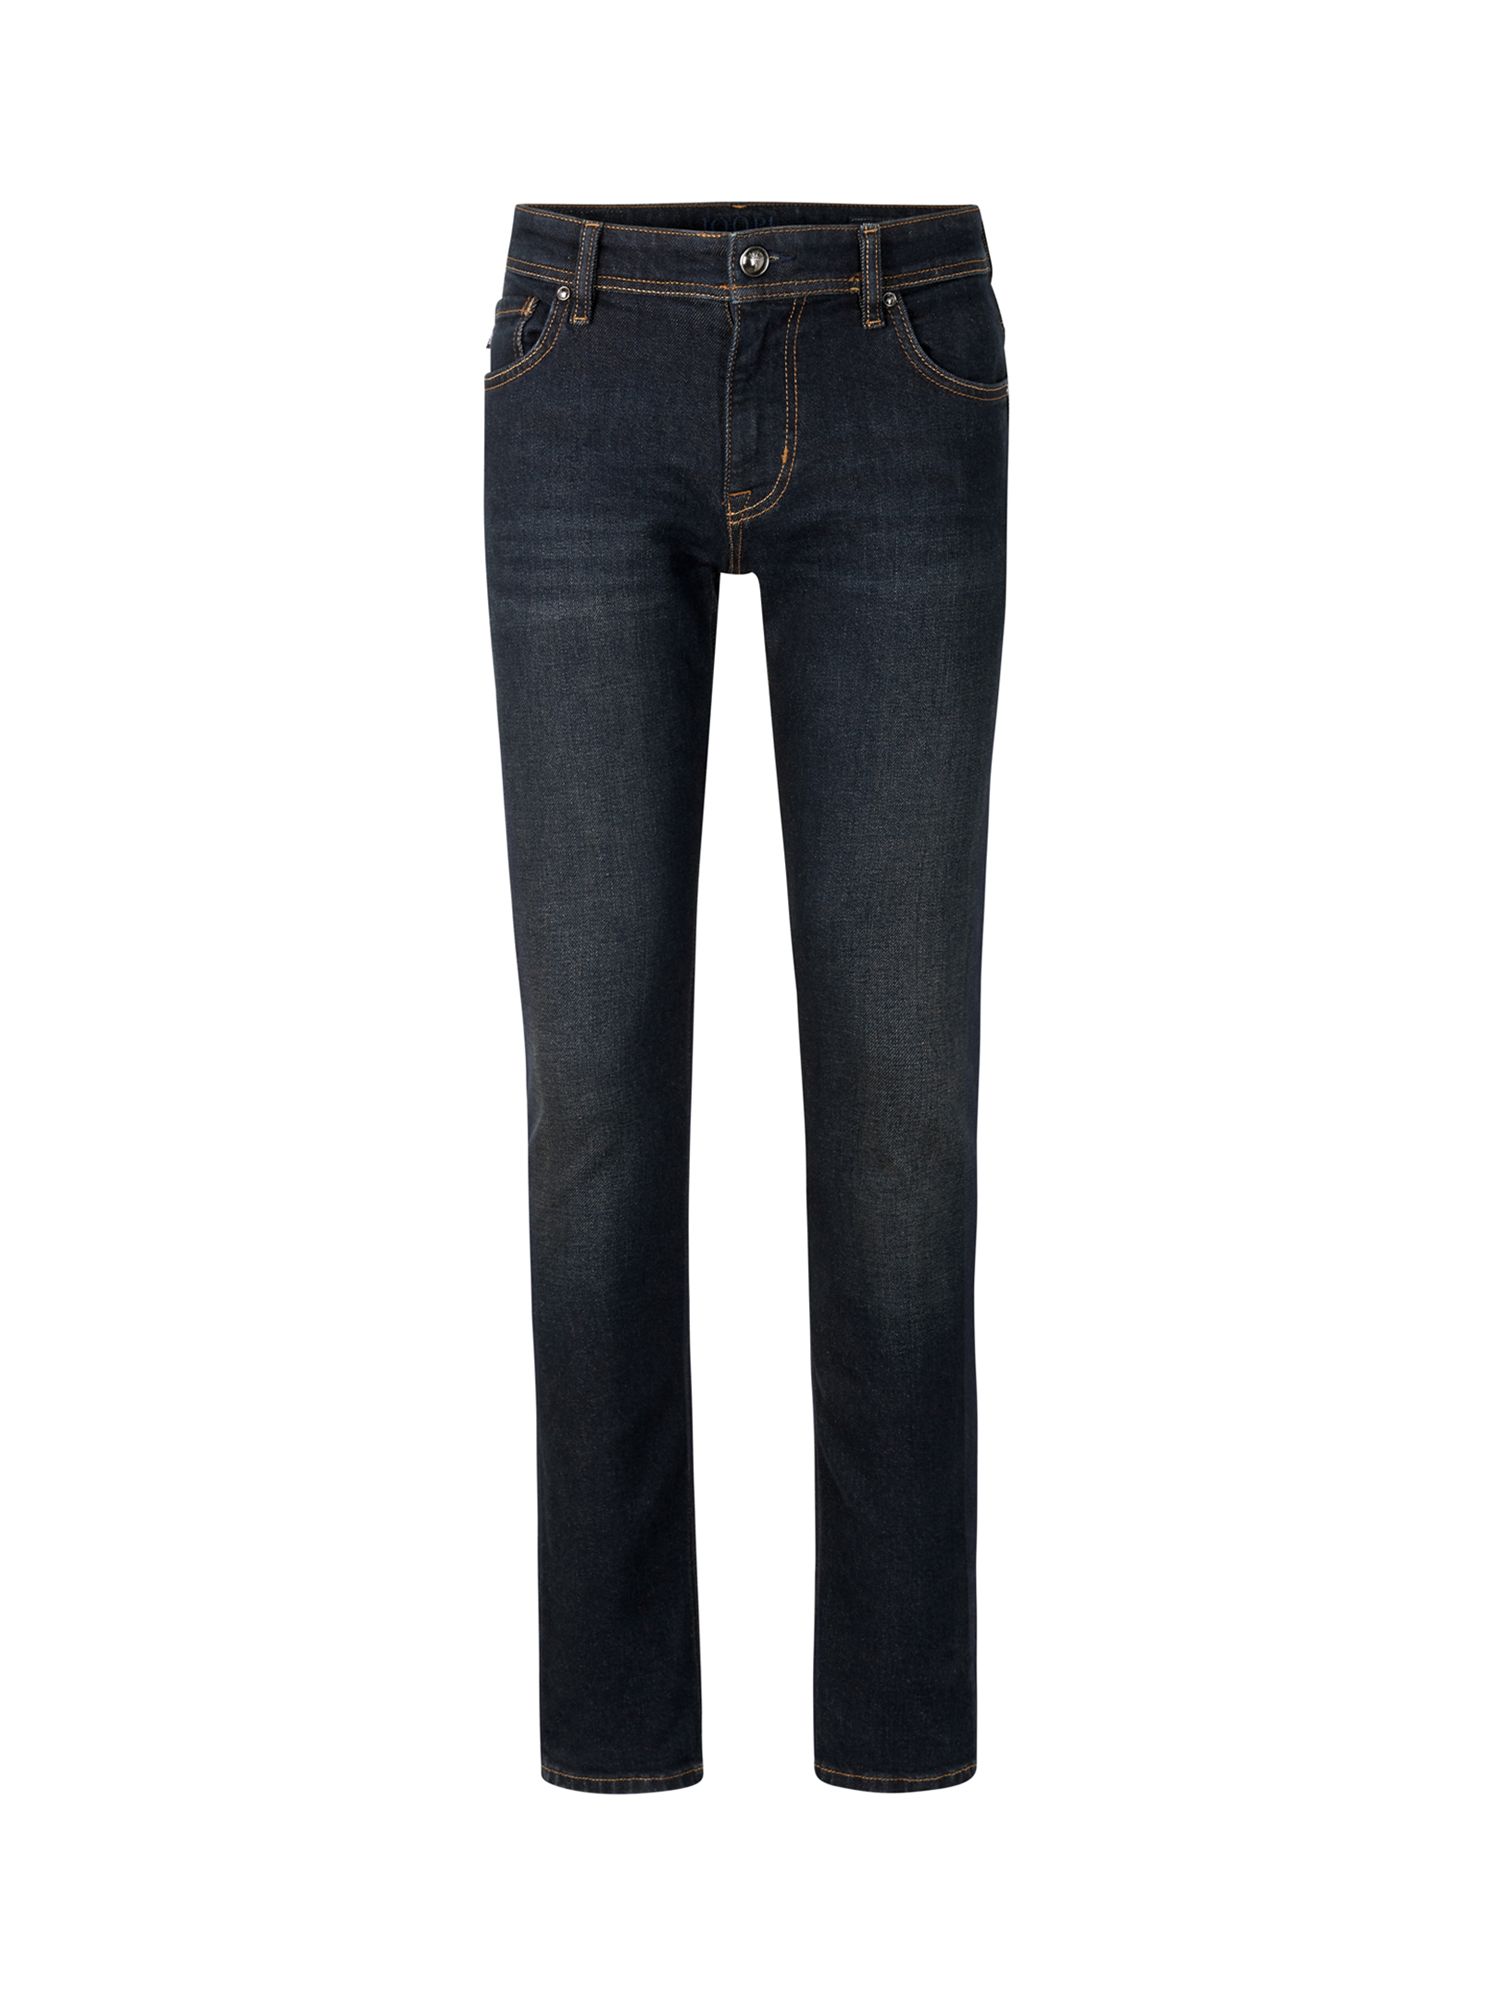 JOOP! Hamond Slim Fit Jeans, Dark Blue, W30/L30